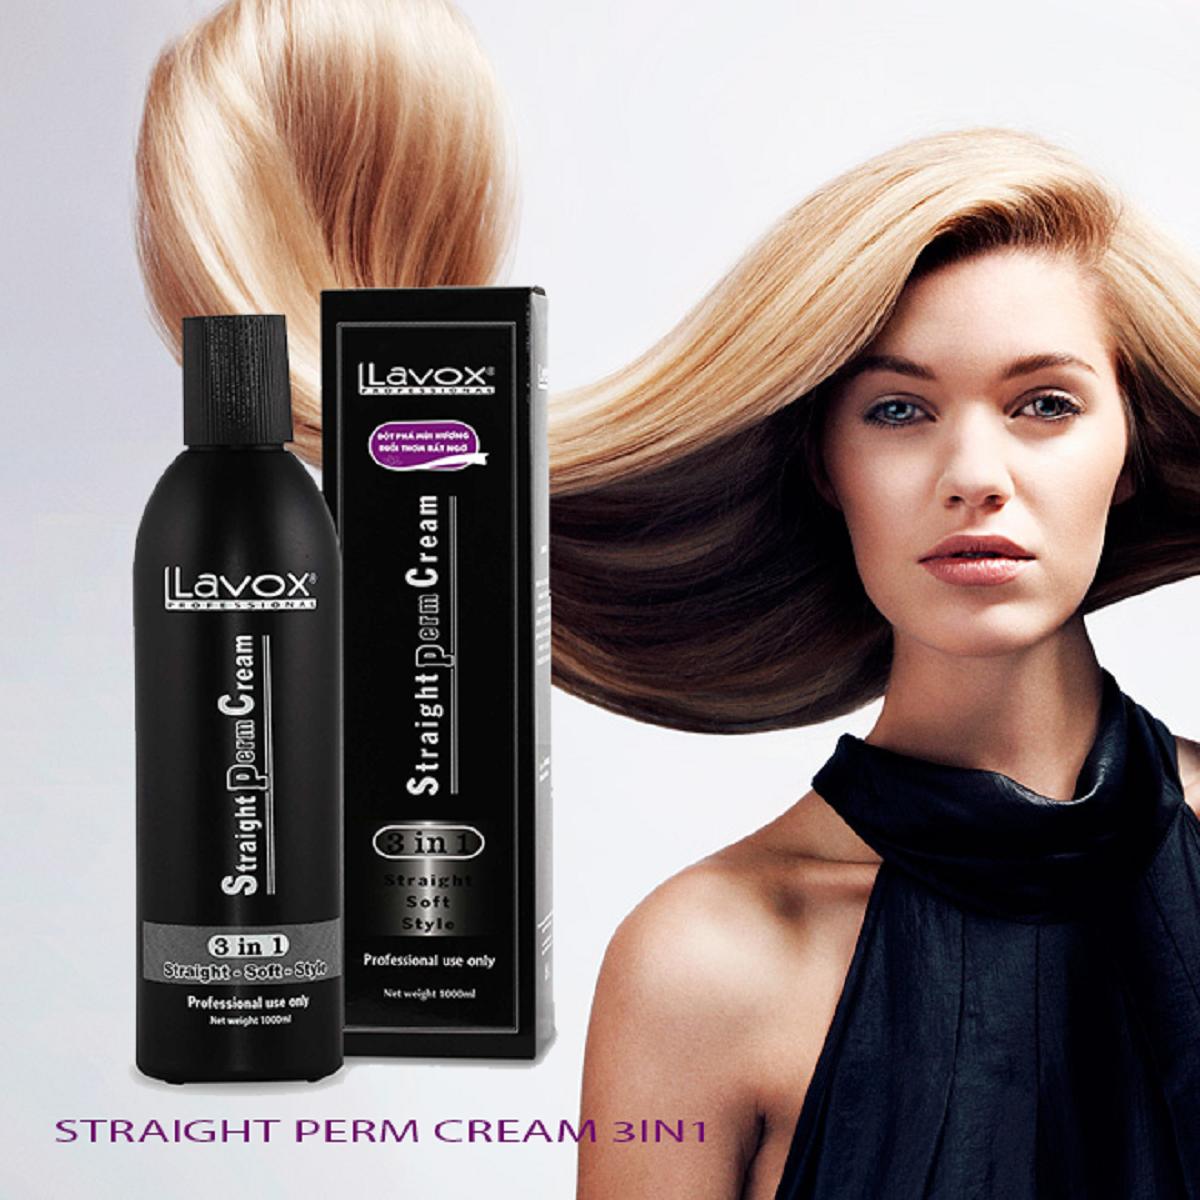 Bạn đang mất nhiều thời gian và công sức để chải tóc mỗi sáng? Với thuốc duỗi tóc Lavox 3 trong 1, bạn sẽ tiết kiệm được thời gian và tóc của bạn luôn thẳng mượt, không lo bị xoăn hay gãy rụng. Hãy xem hình ảnh để tin vào sự tuyệt vời của sản phẩm!